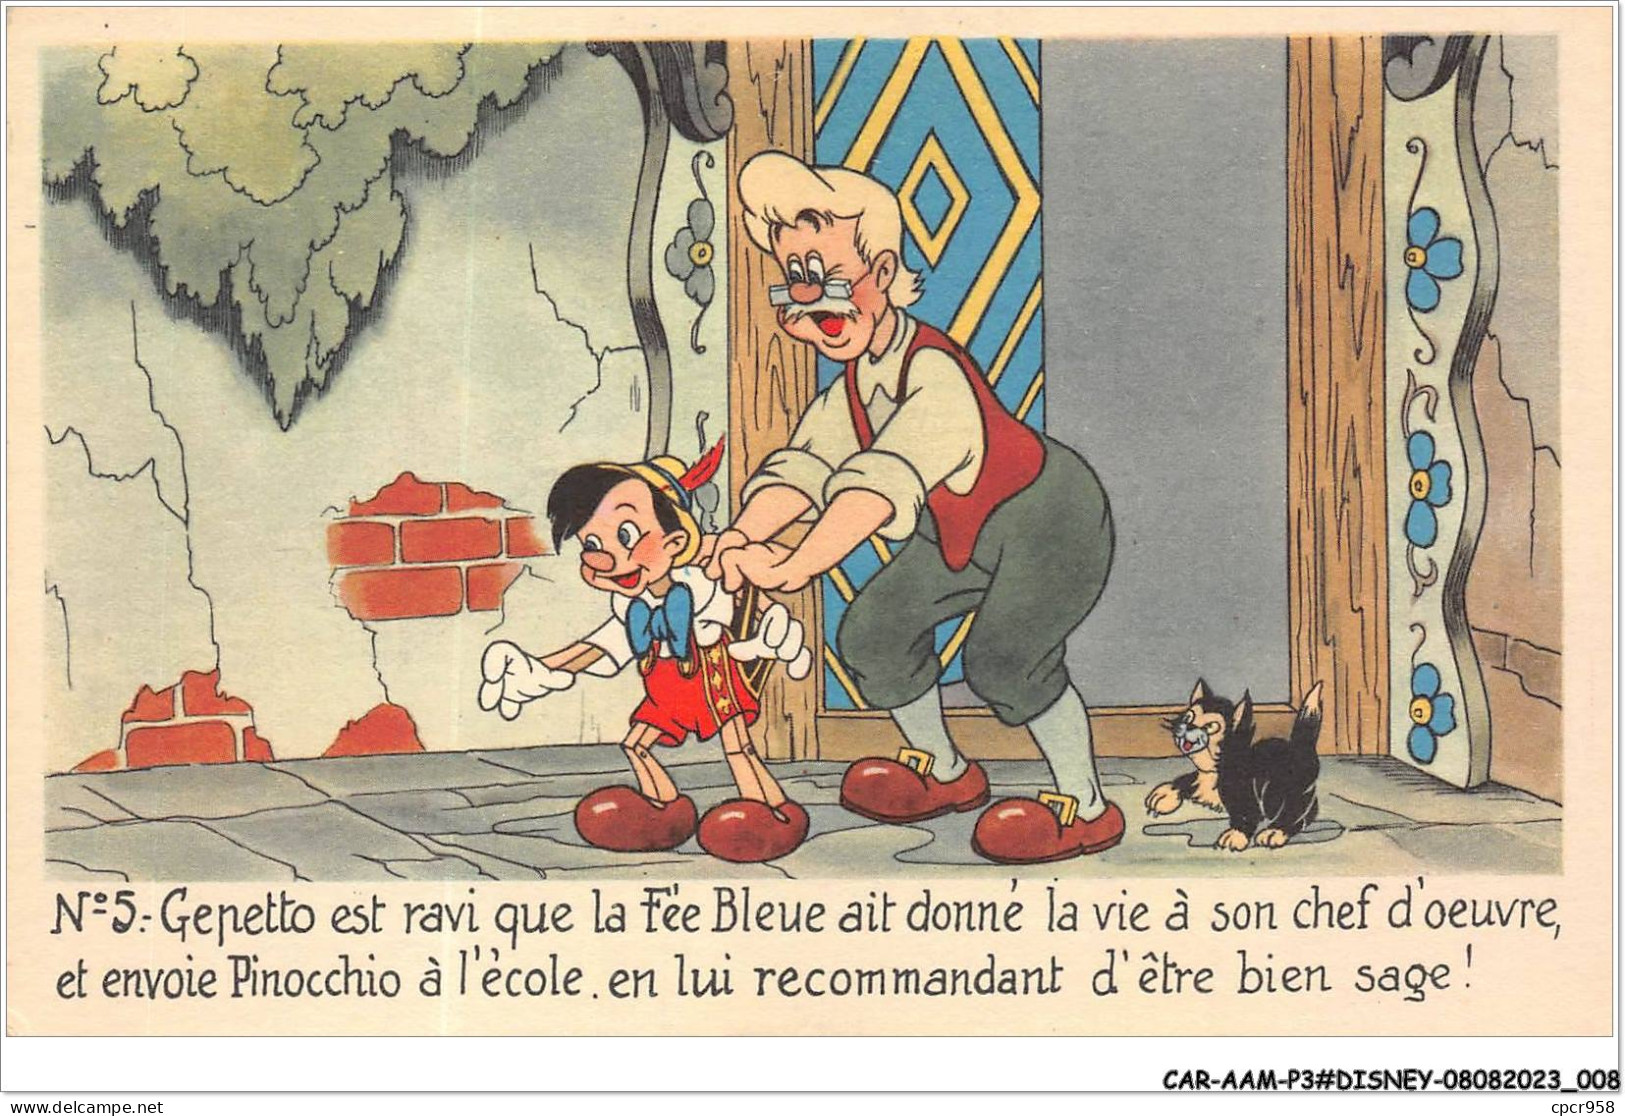 CAR-AAMP3-DISNEY-0214 - Pinocchio - Gepetto Est Ravi Que La Fée Bleue Ait Donné Vie A Son Chef D'oeuvre - N°5 - Disneyland